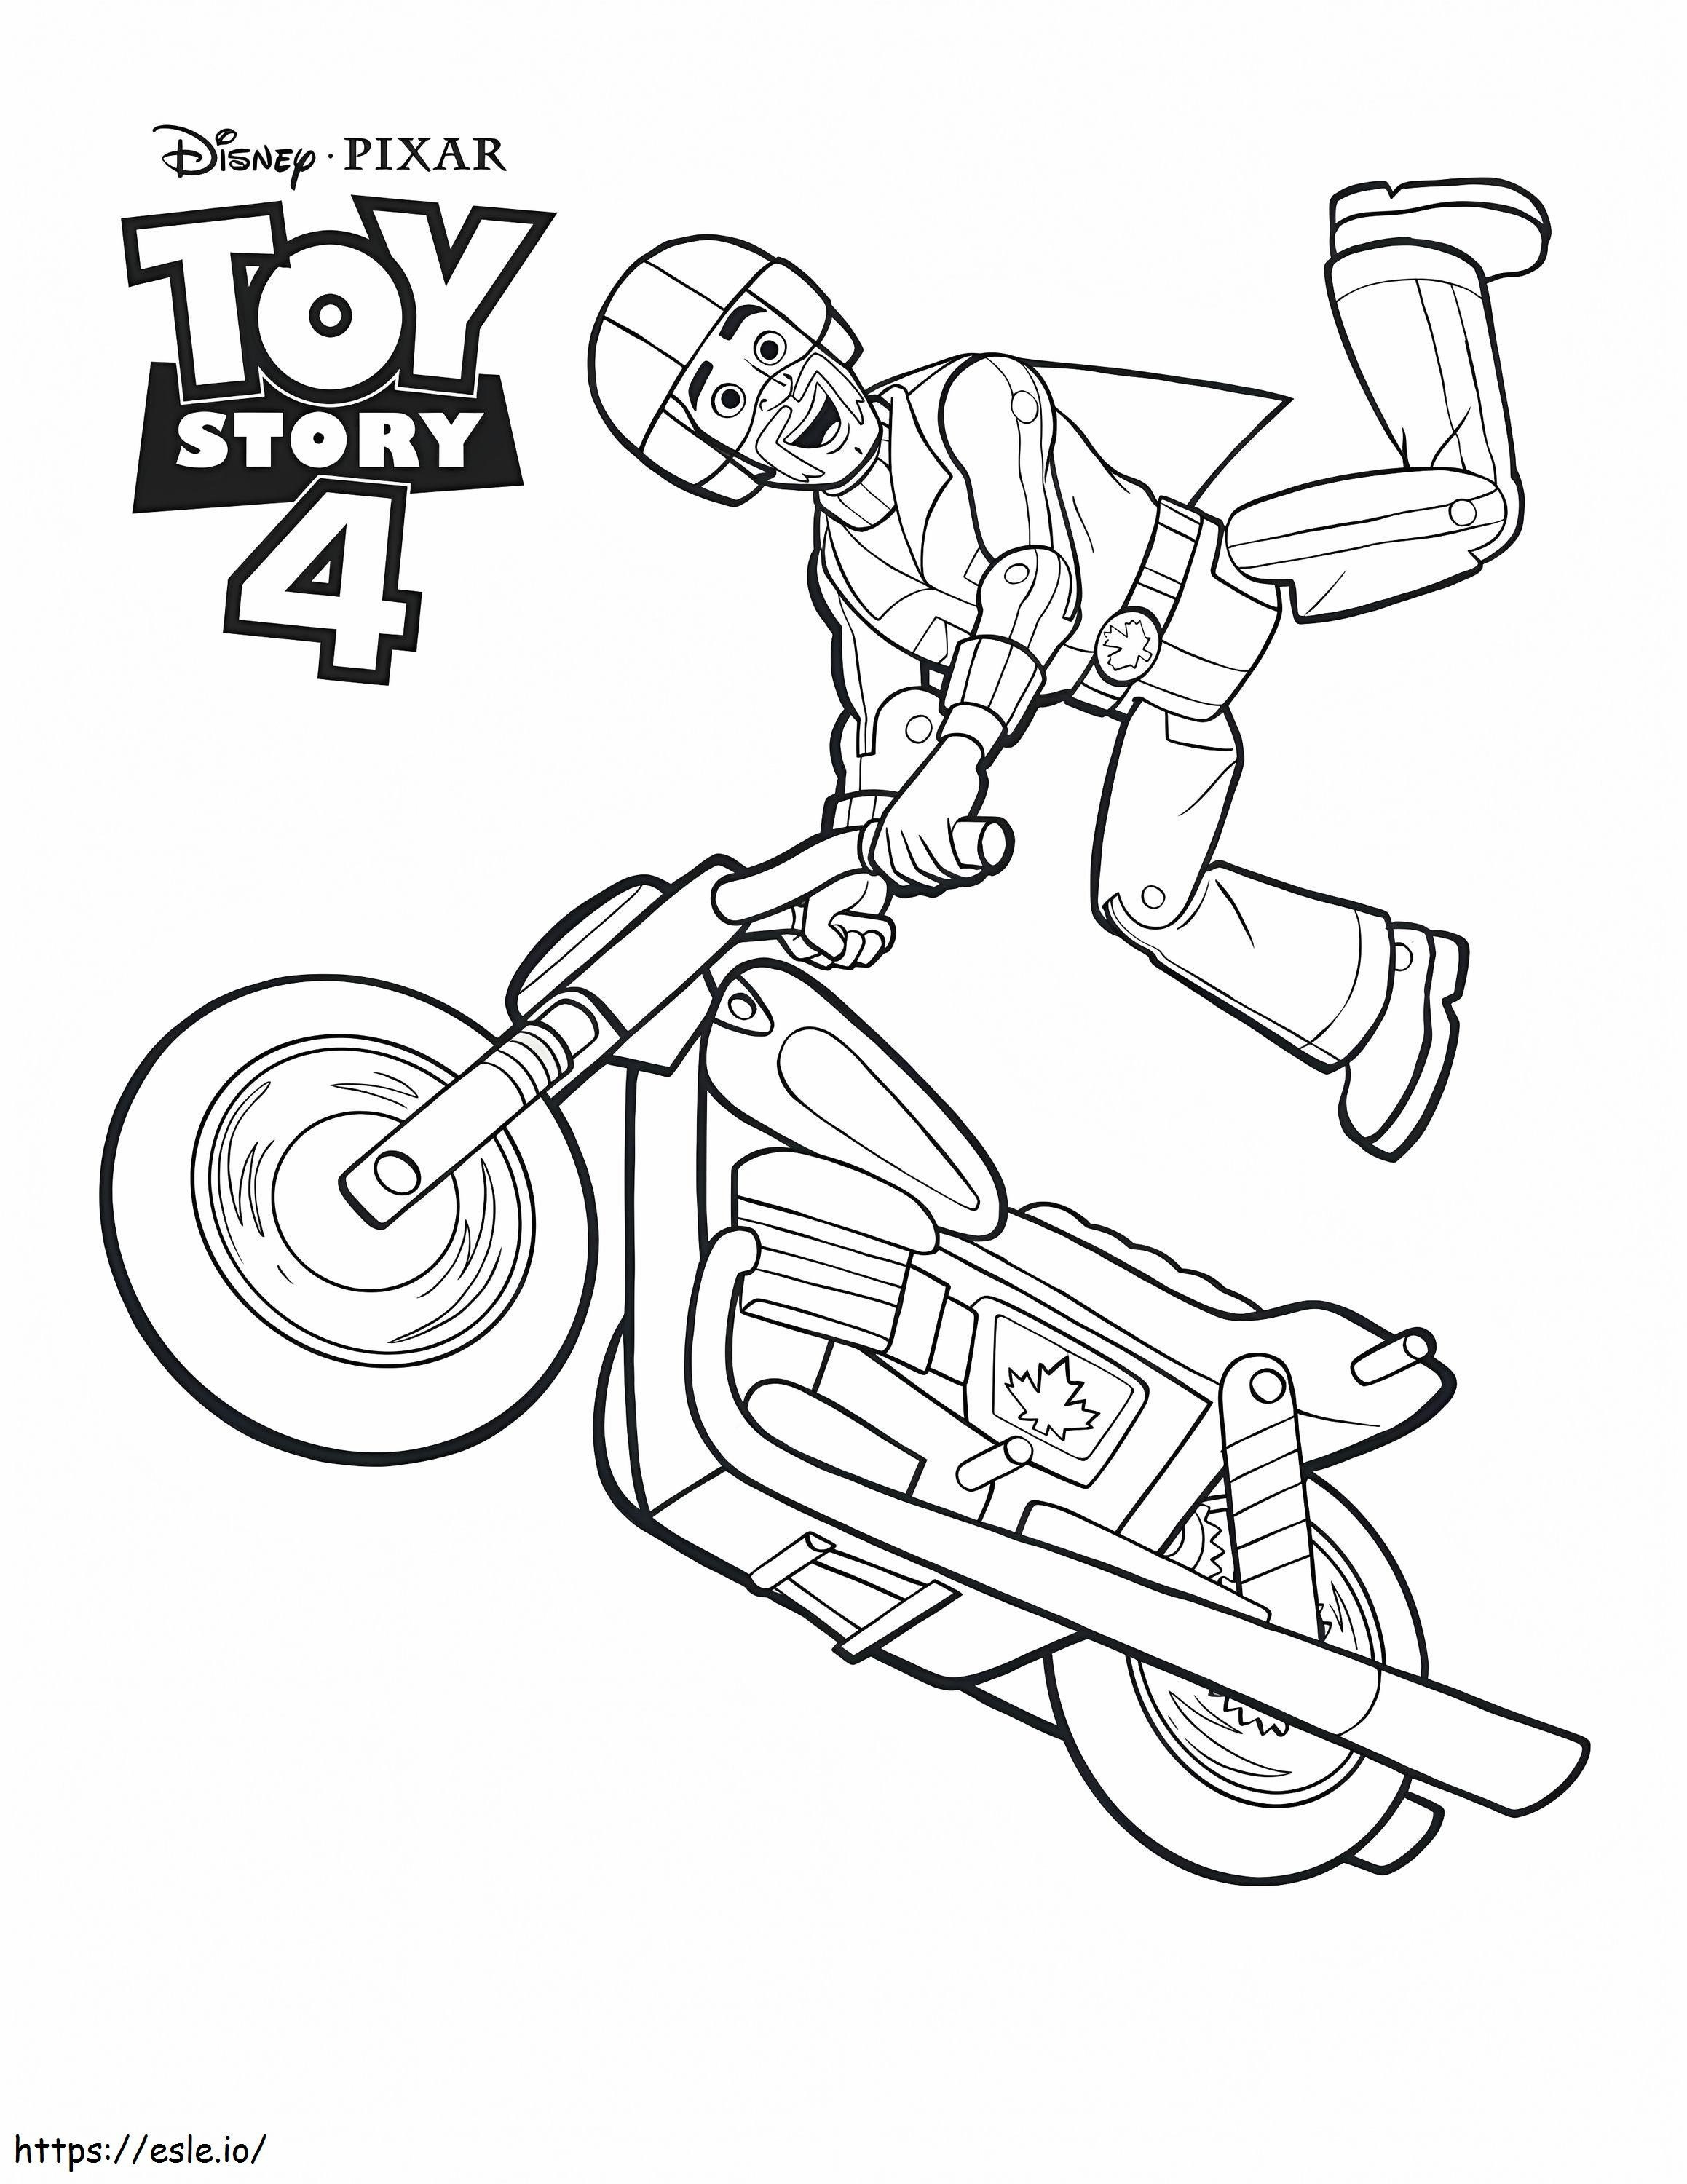 1570842326 Toy Story 4 Duke Caboom para impressão 791X1024 1 para colorir